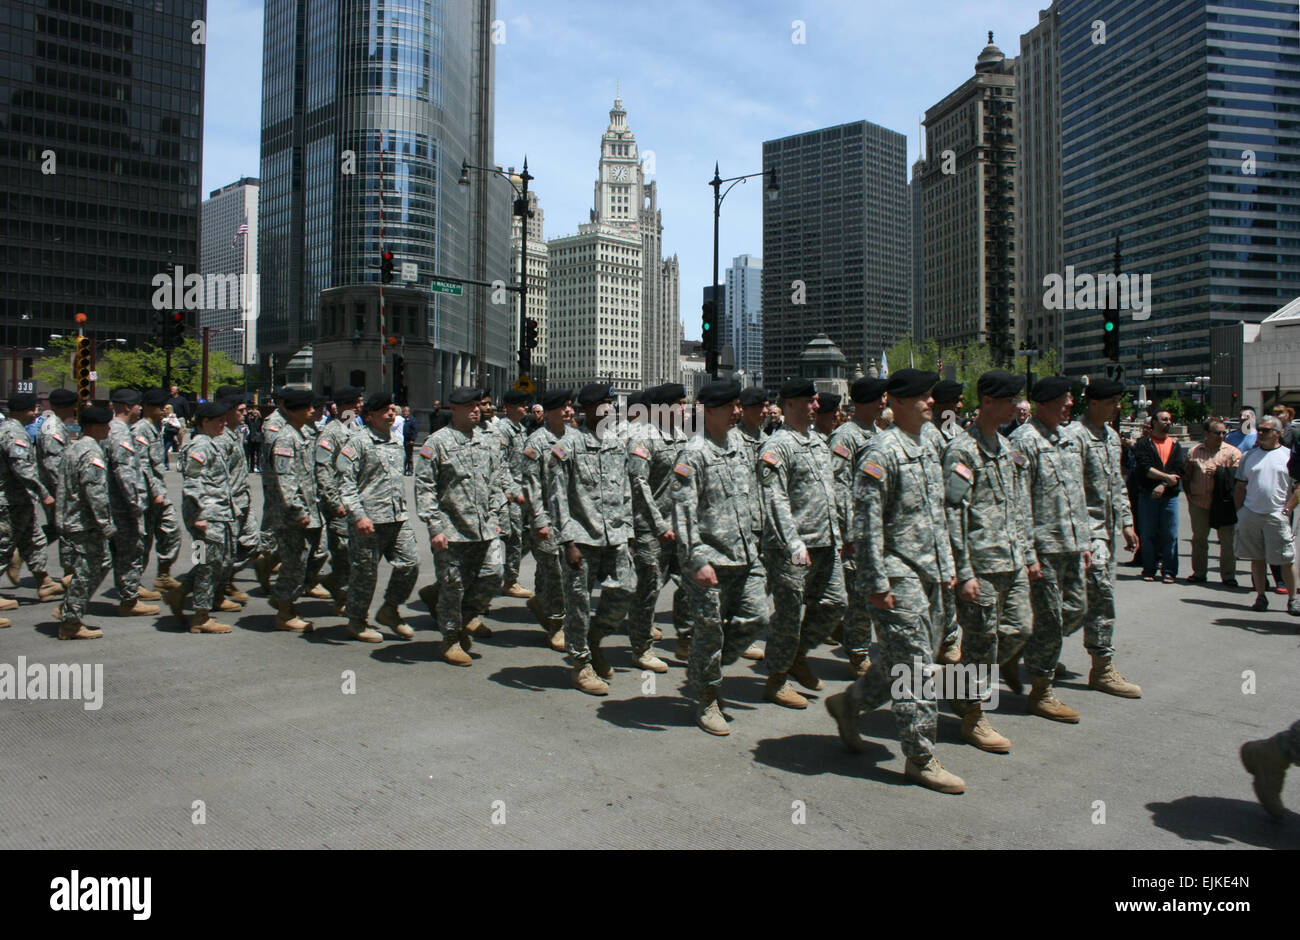 Membres de la 1ère Division d'infanterie de l'armée américaine mars dans la ville de Chicago's Memorial Day Parade le Samedi, 24 mai 2008, Chris Gray-Garcia Banque D'Images